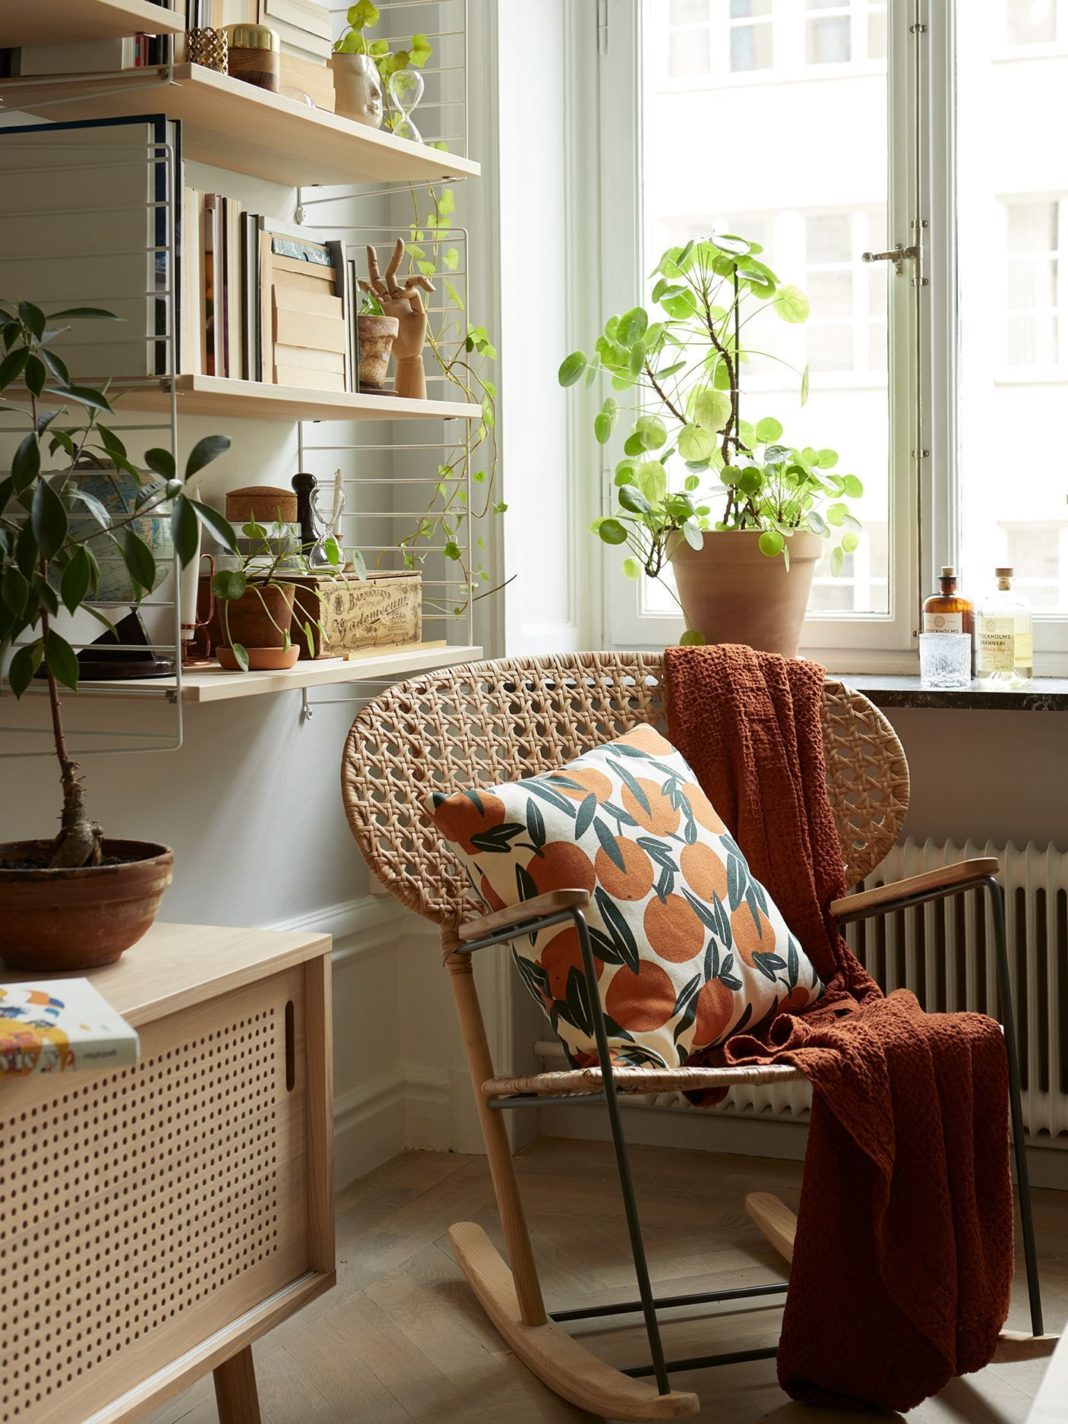 Mobilier et décoration vintage dans un appartement ancien - PLANETE DECO a homes world